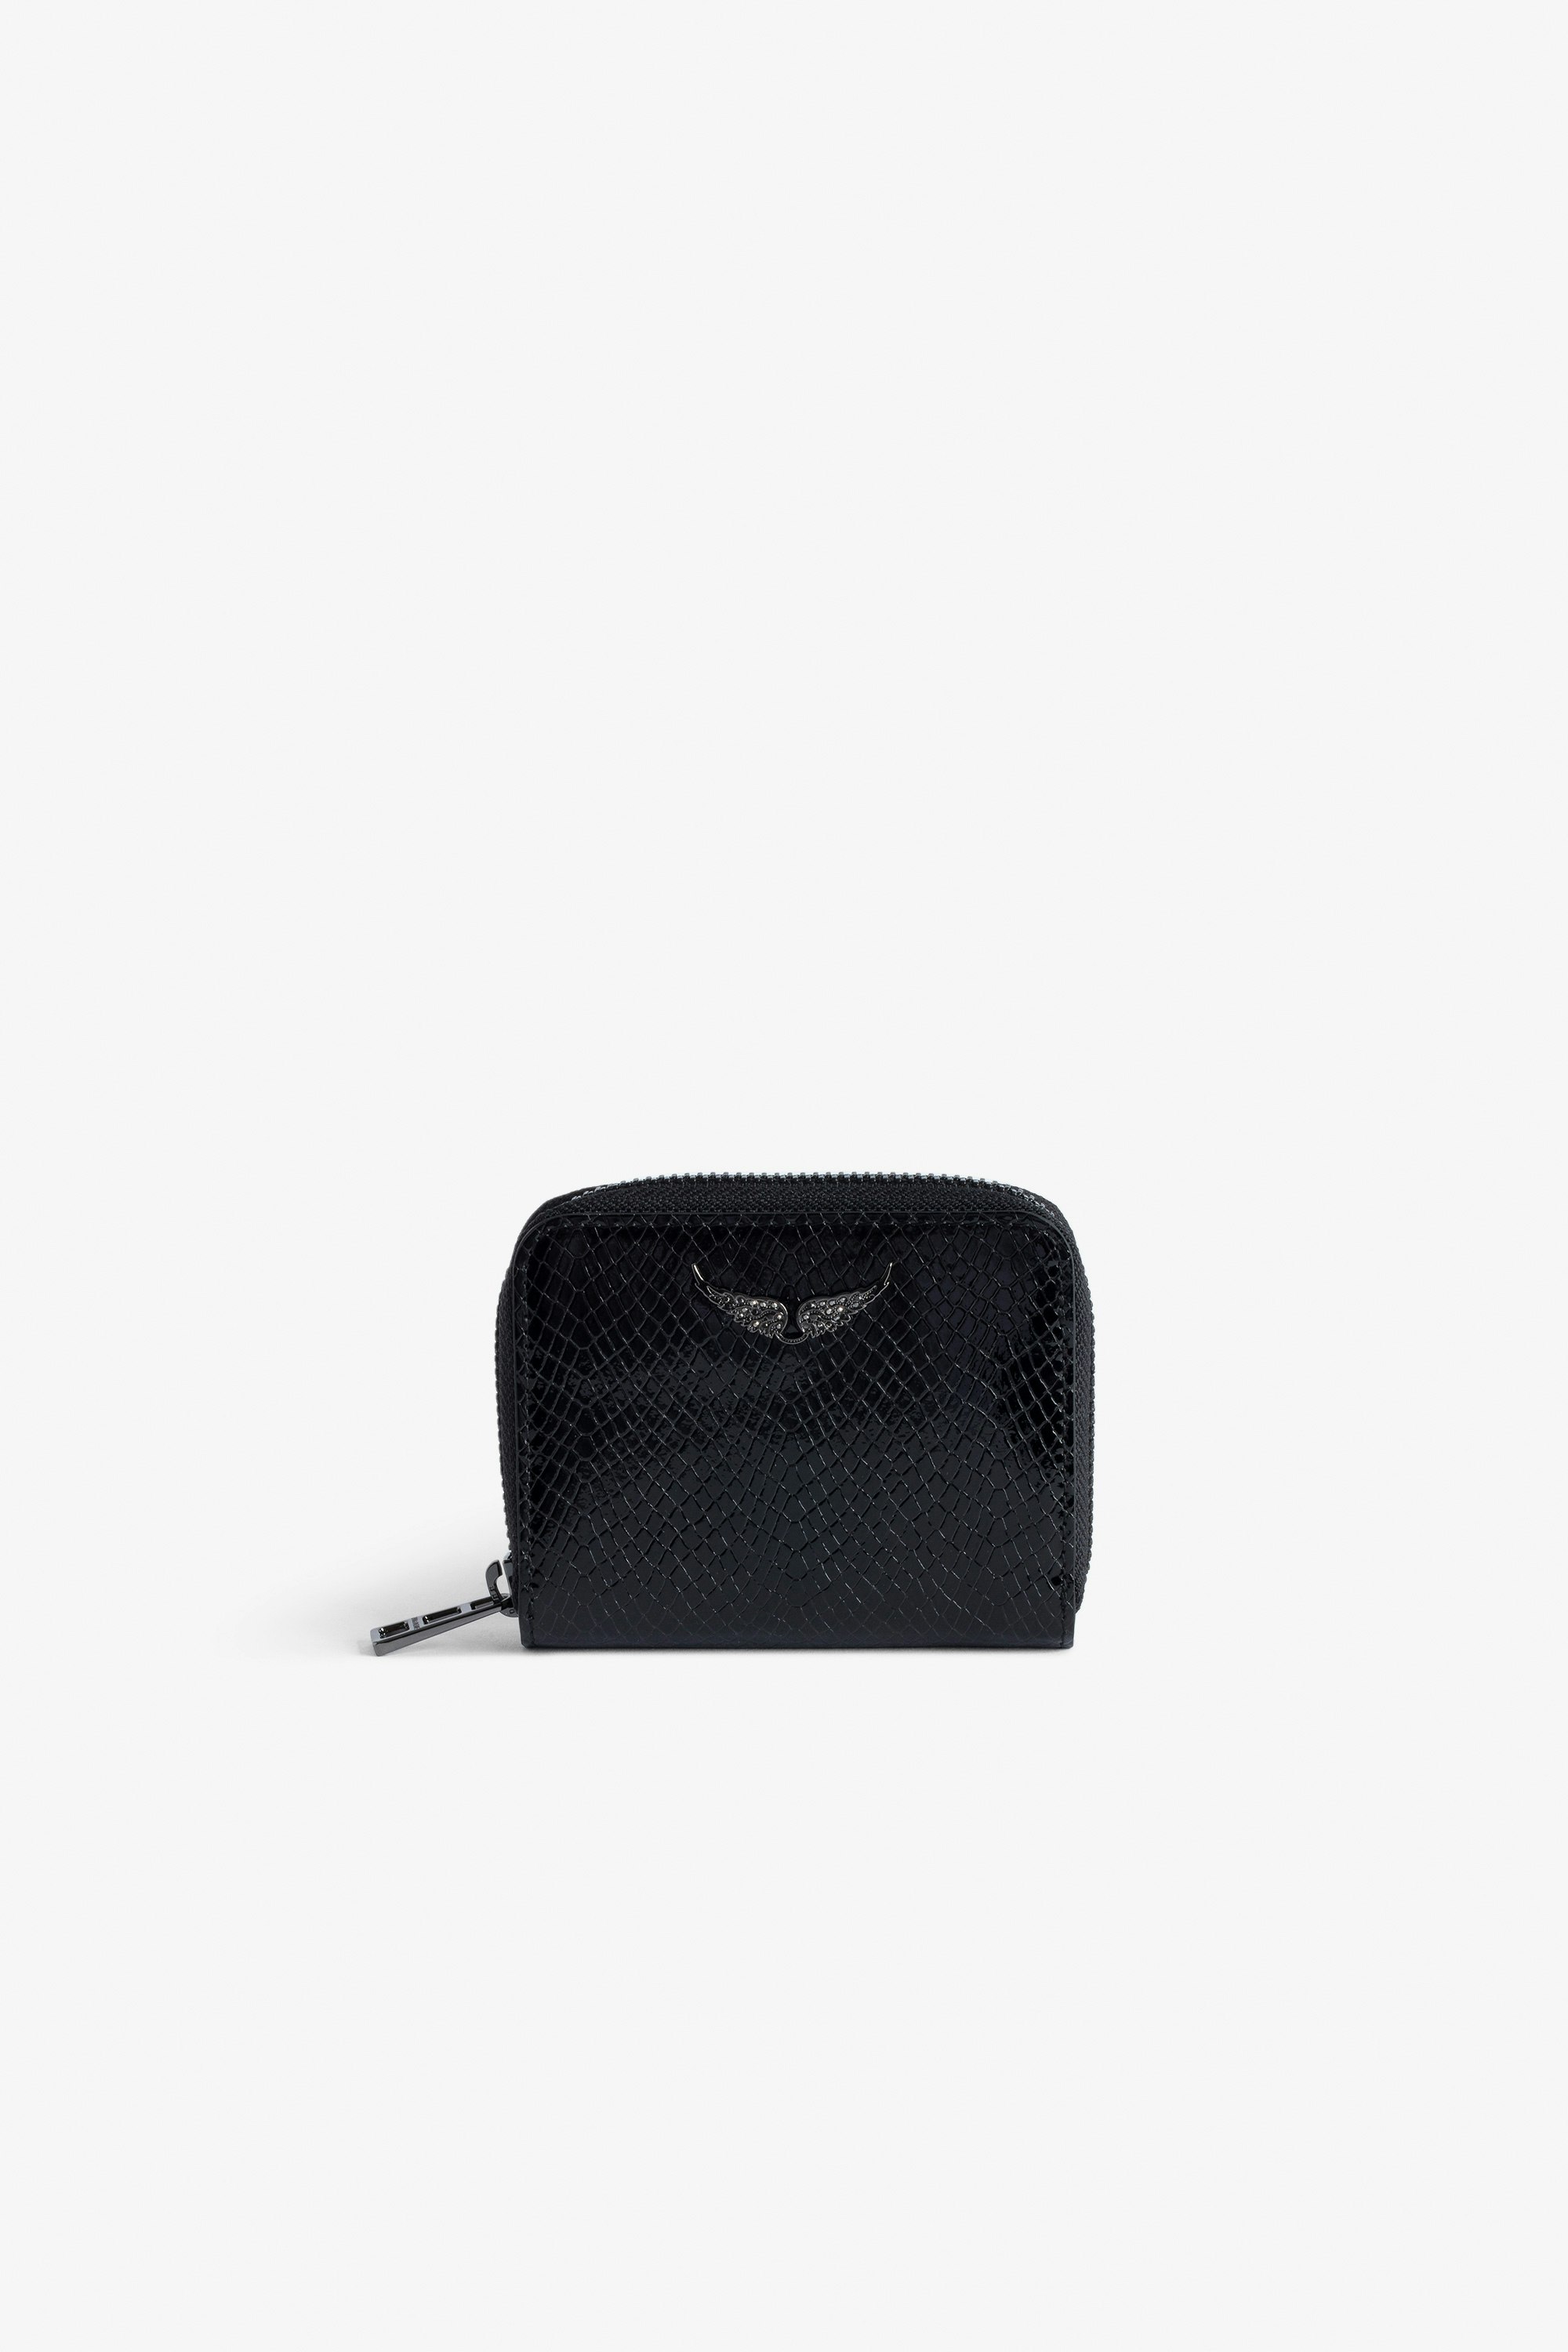 Portamonete Mini ZV Glossy Wild Goffrato Portafoglio in pelle lucida nero effetto pitone con charm ali in strass da donna.